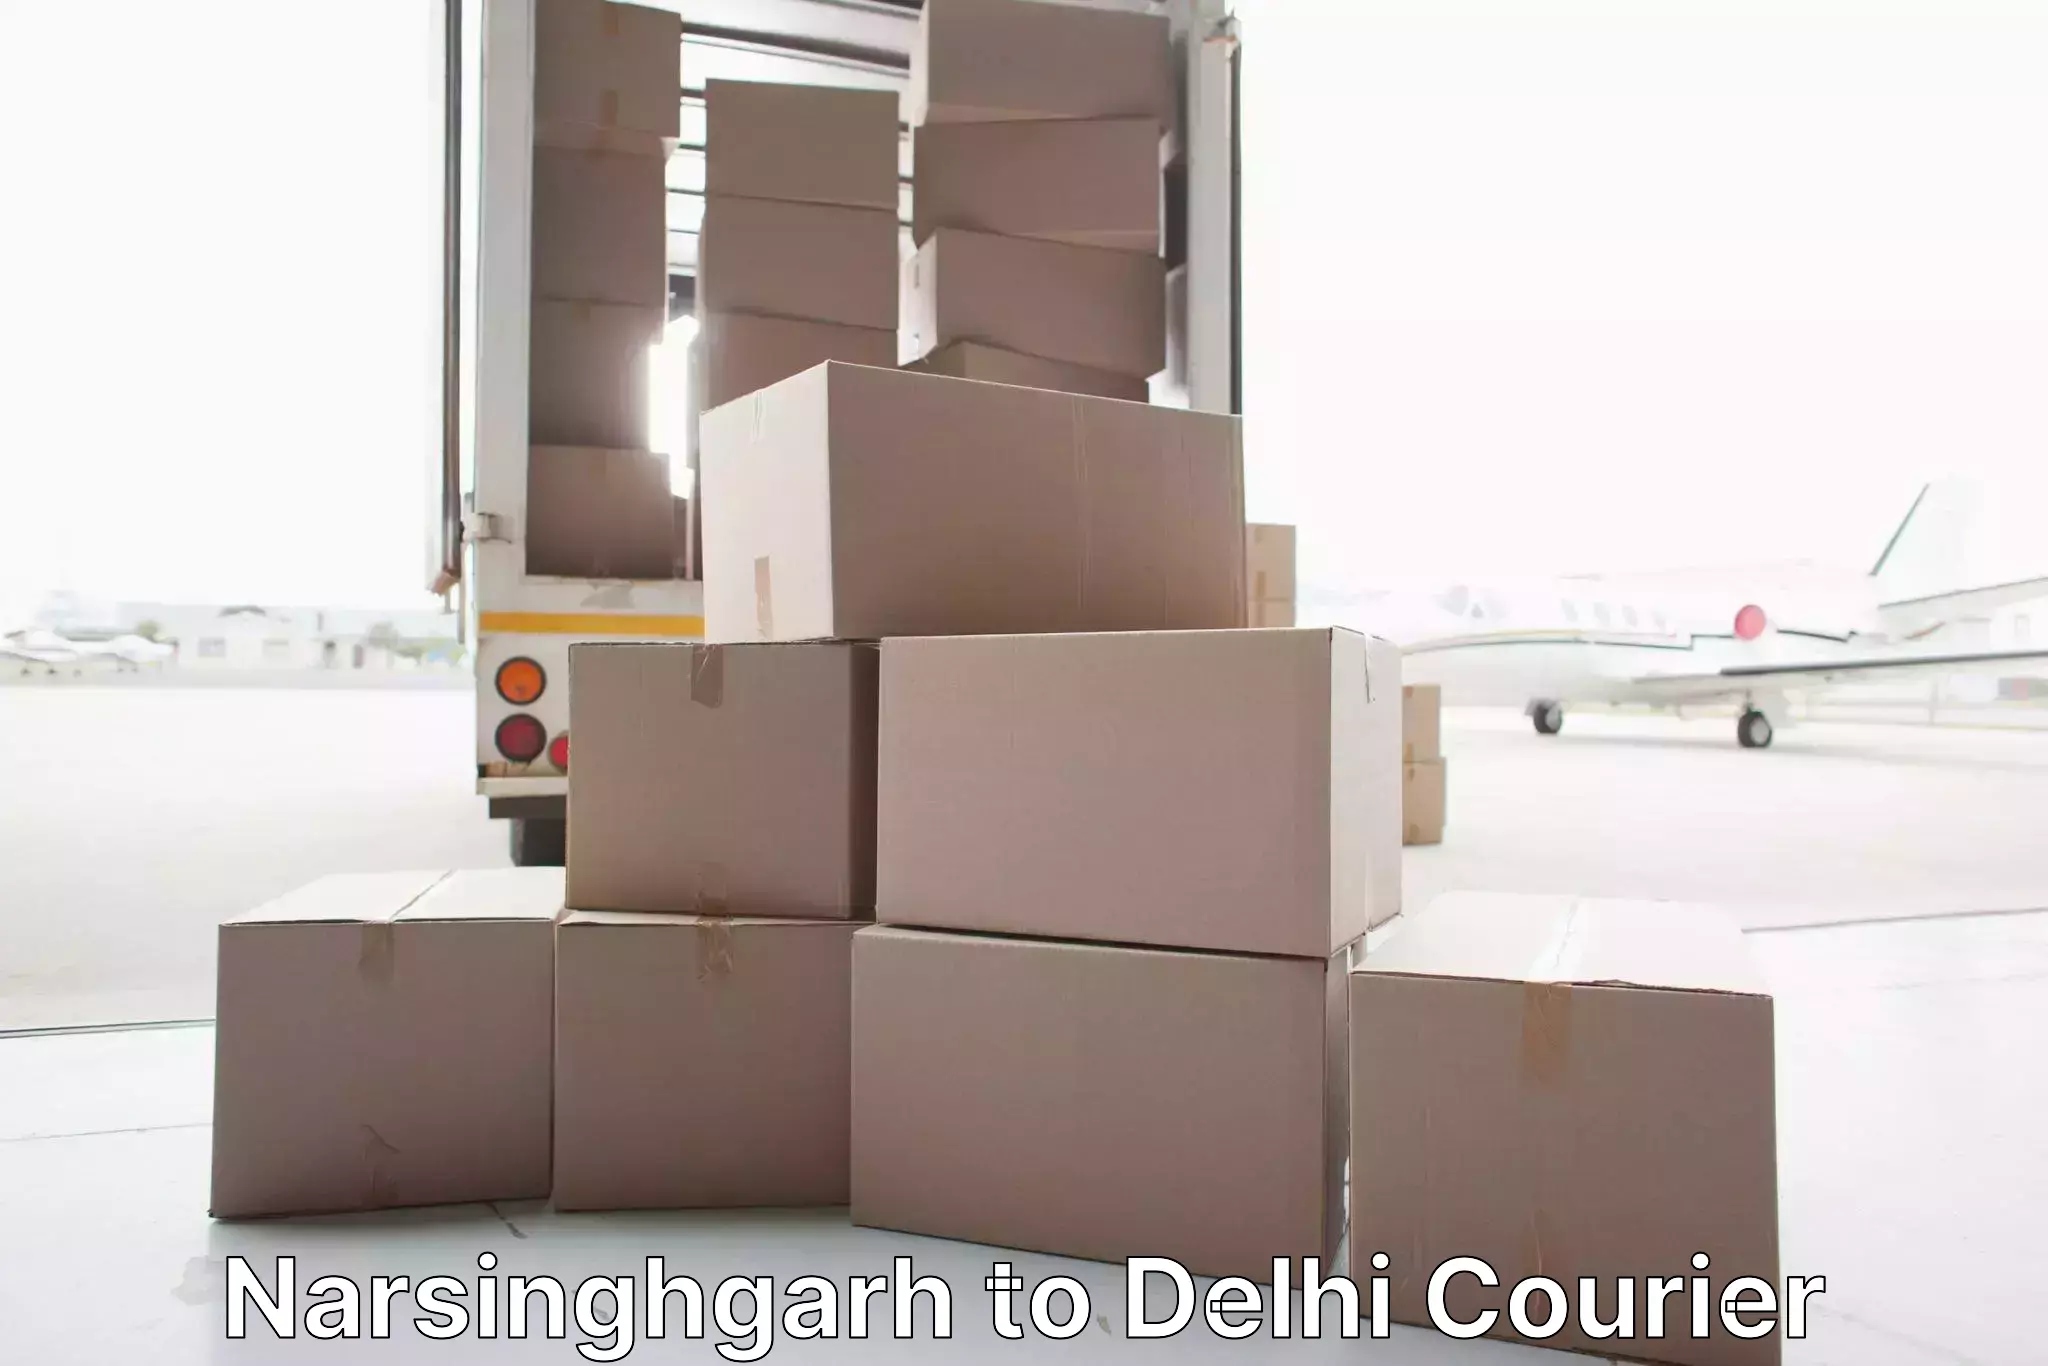 Skilled furniture transporters Narsinghgarh to NCR